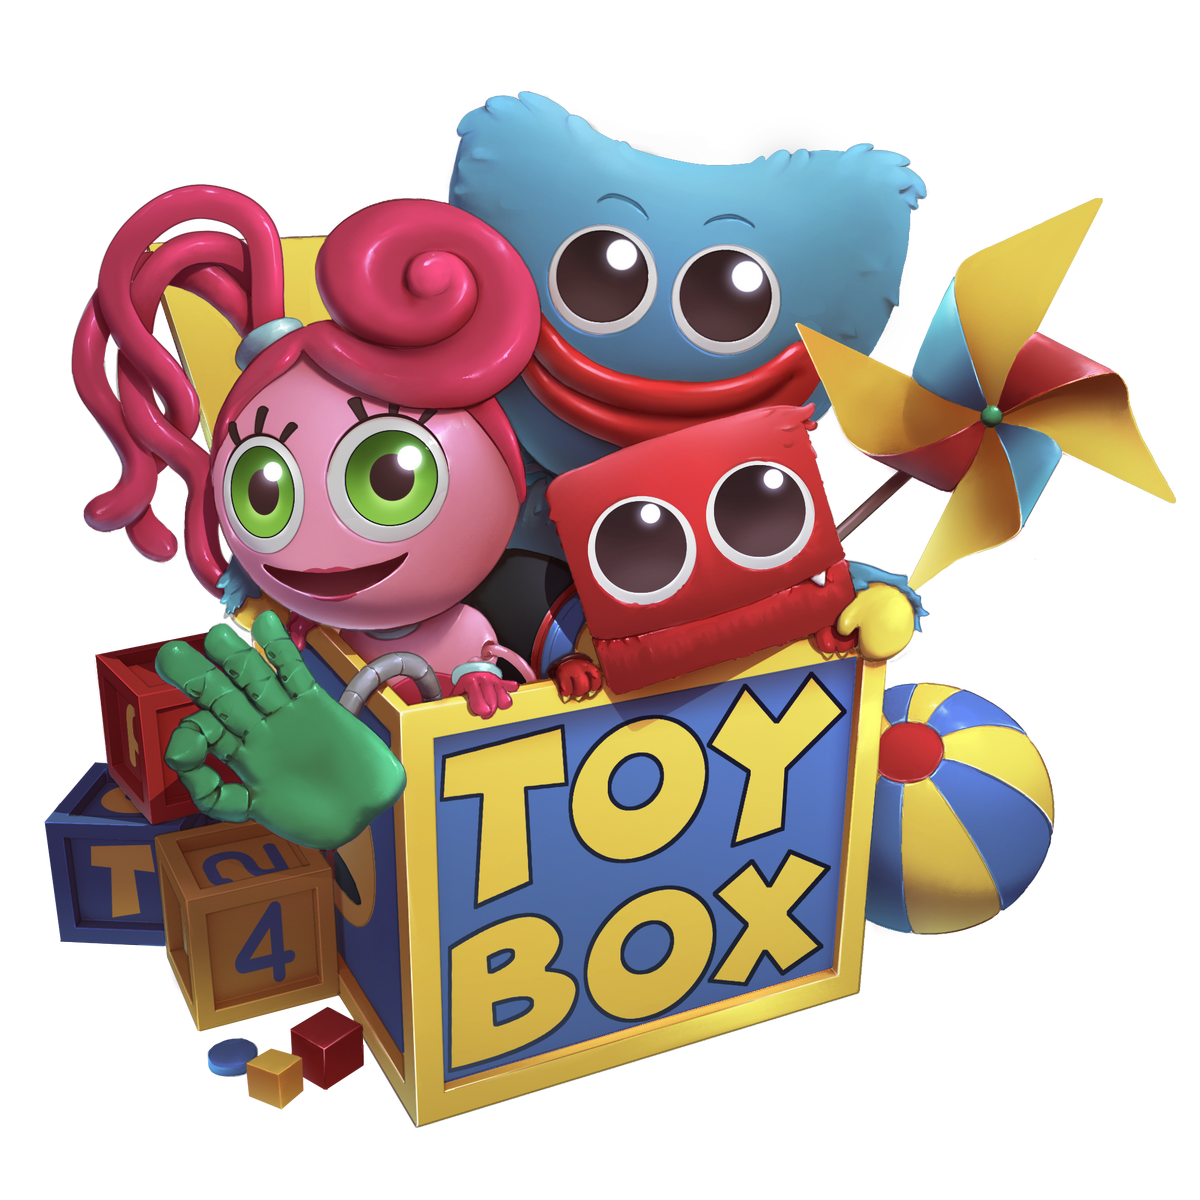 Toybox, Poppy Playtime Wiki